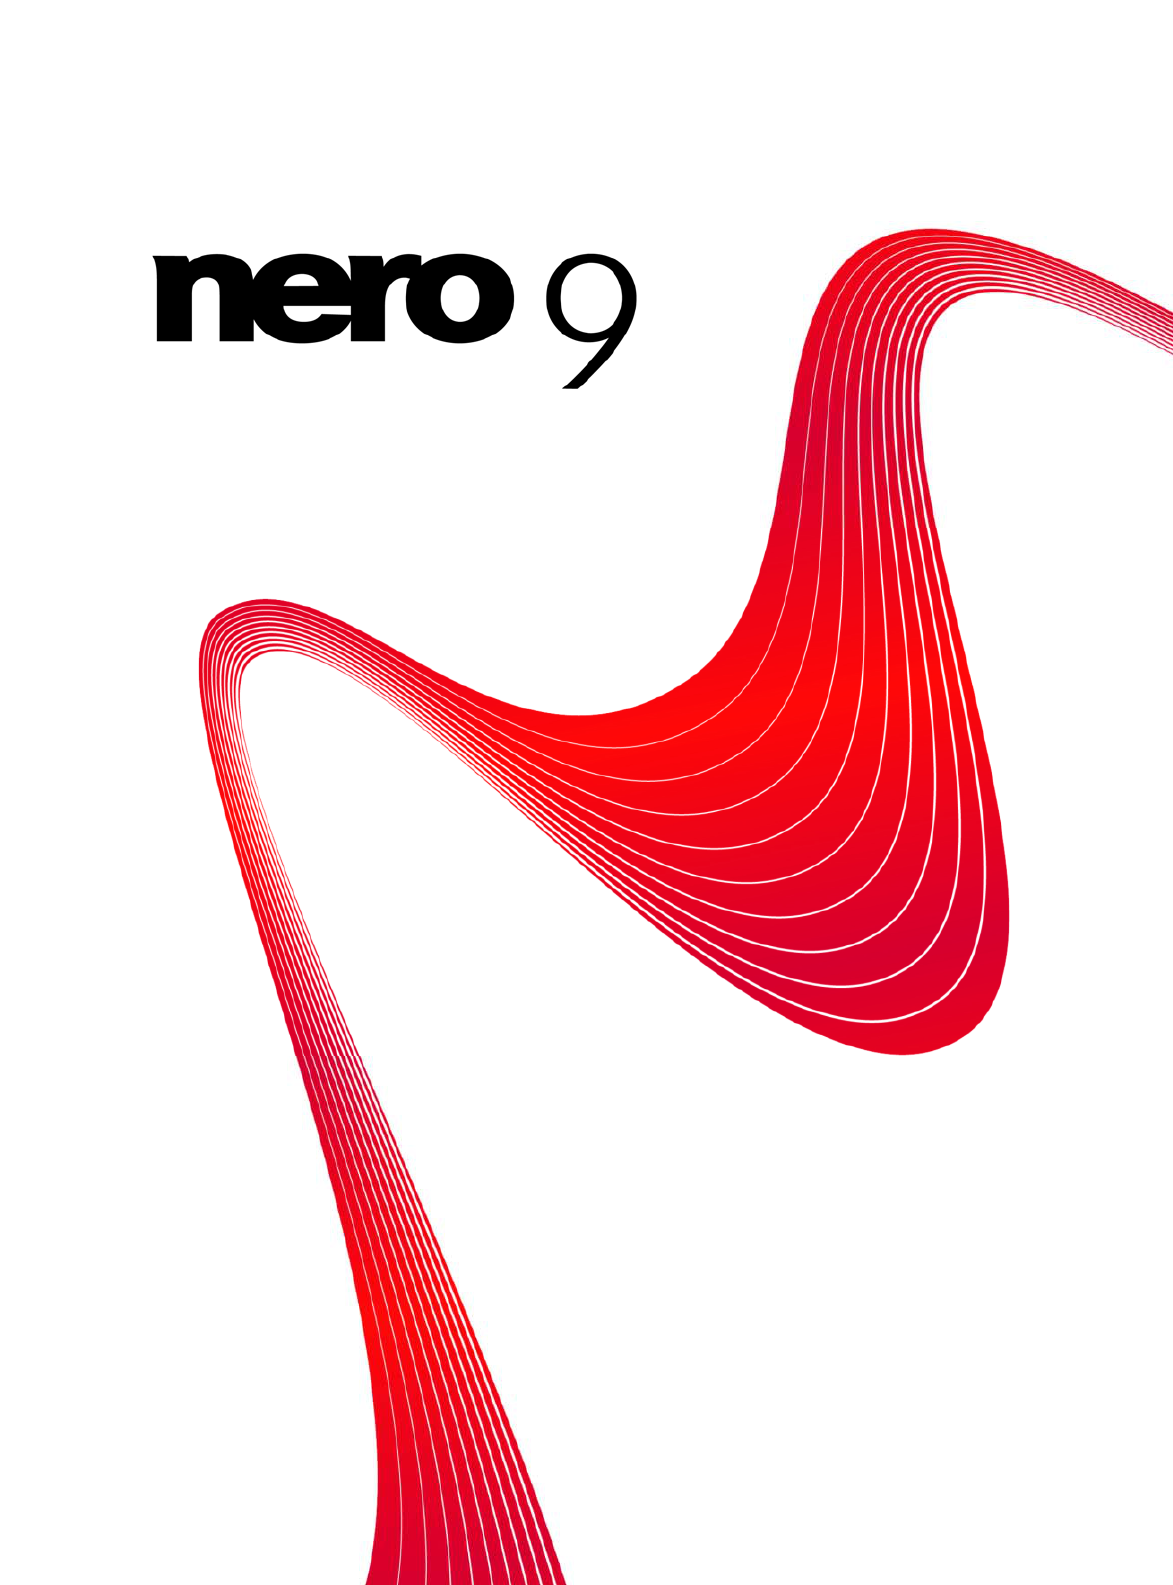 nero smartstart 10 free download